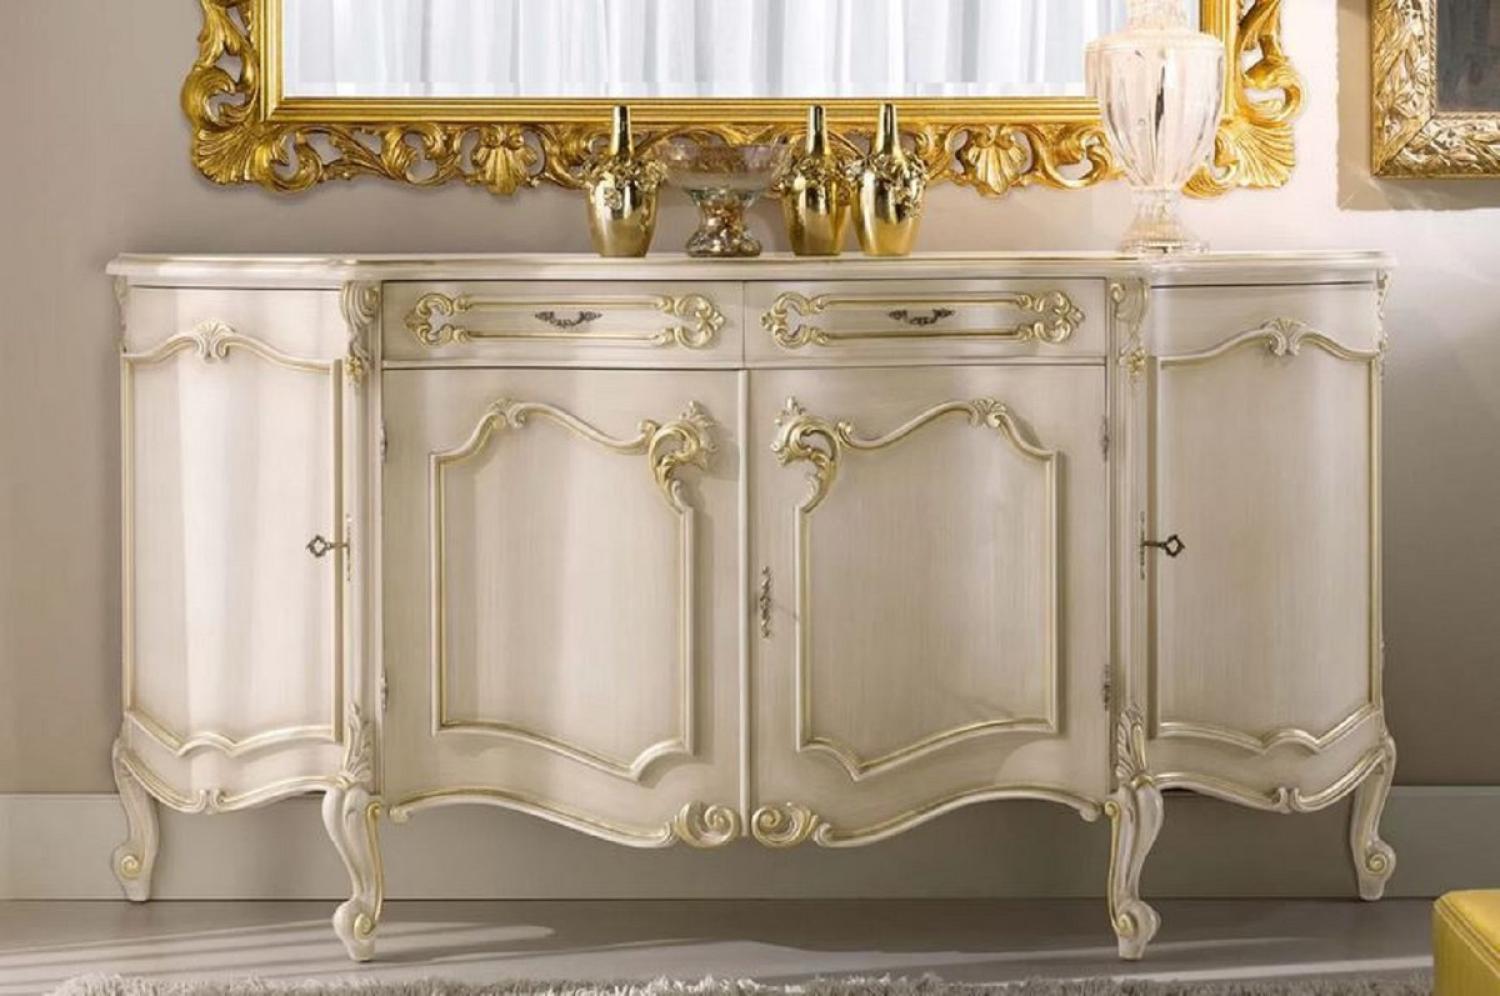 Casa Padrino Luxus Barock Sideboard Cremefarben / Gold - Edler Massivholz Schrank mit 4 Türen und 2 Schubladen - Barock Möbel - Luxus Qualität - Made in Italy Bild 1